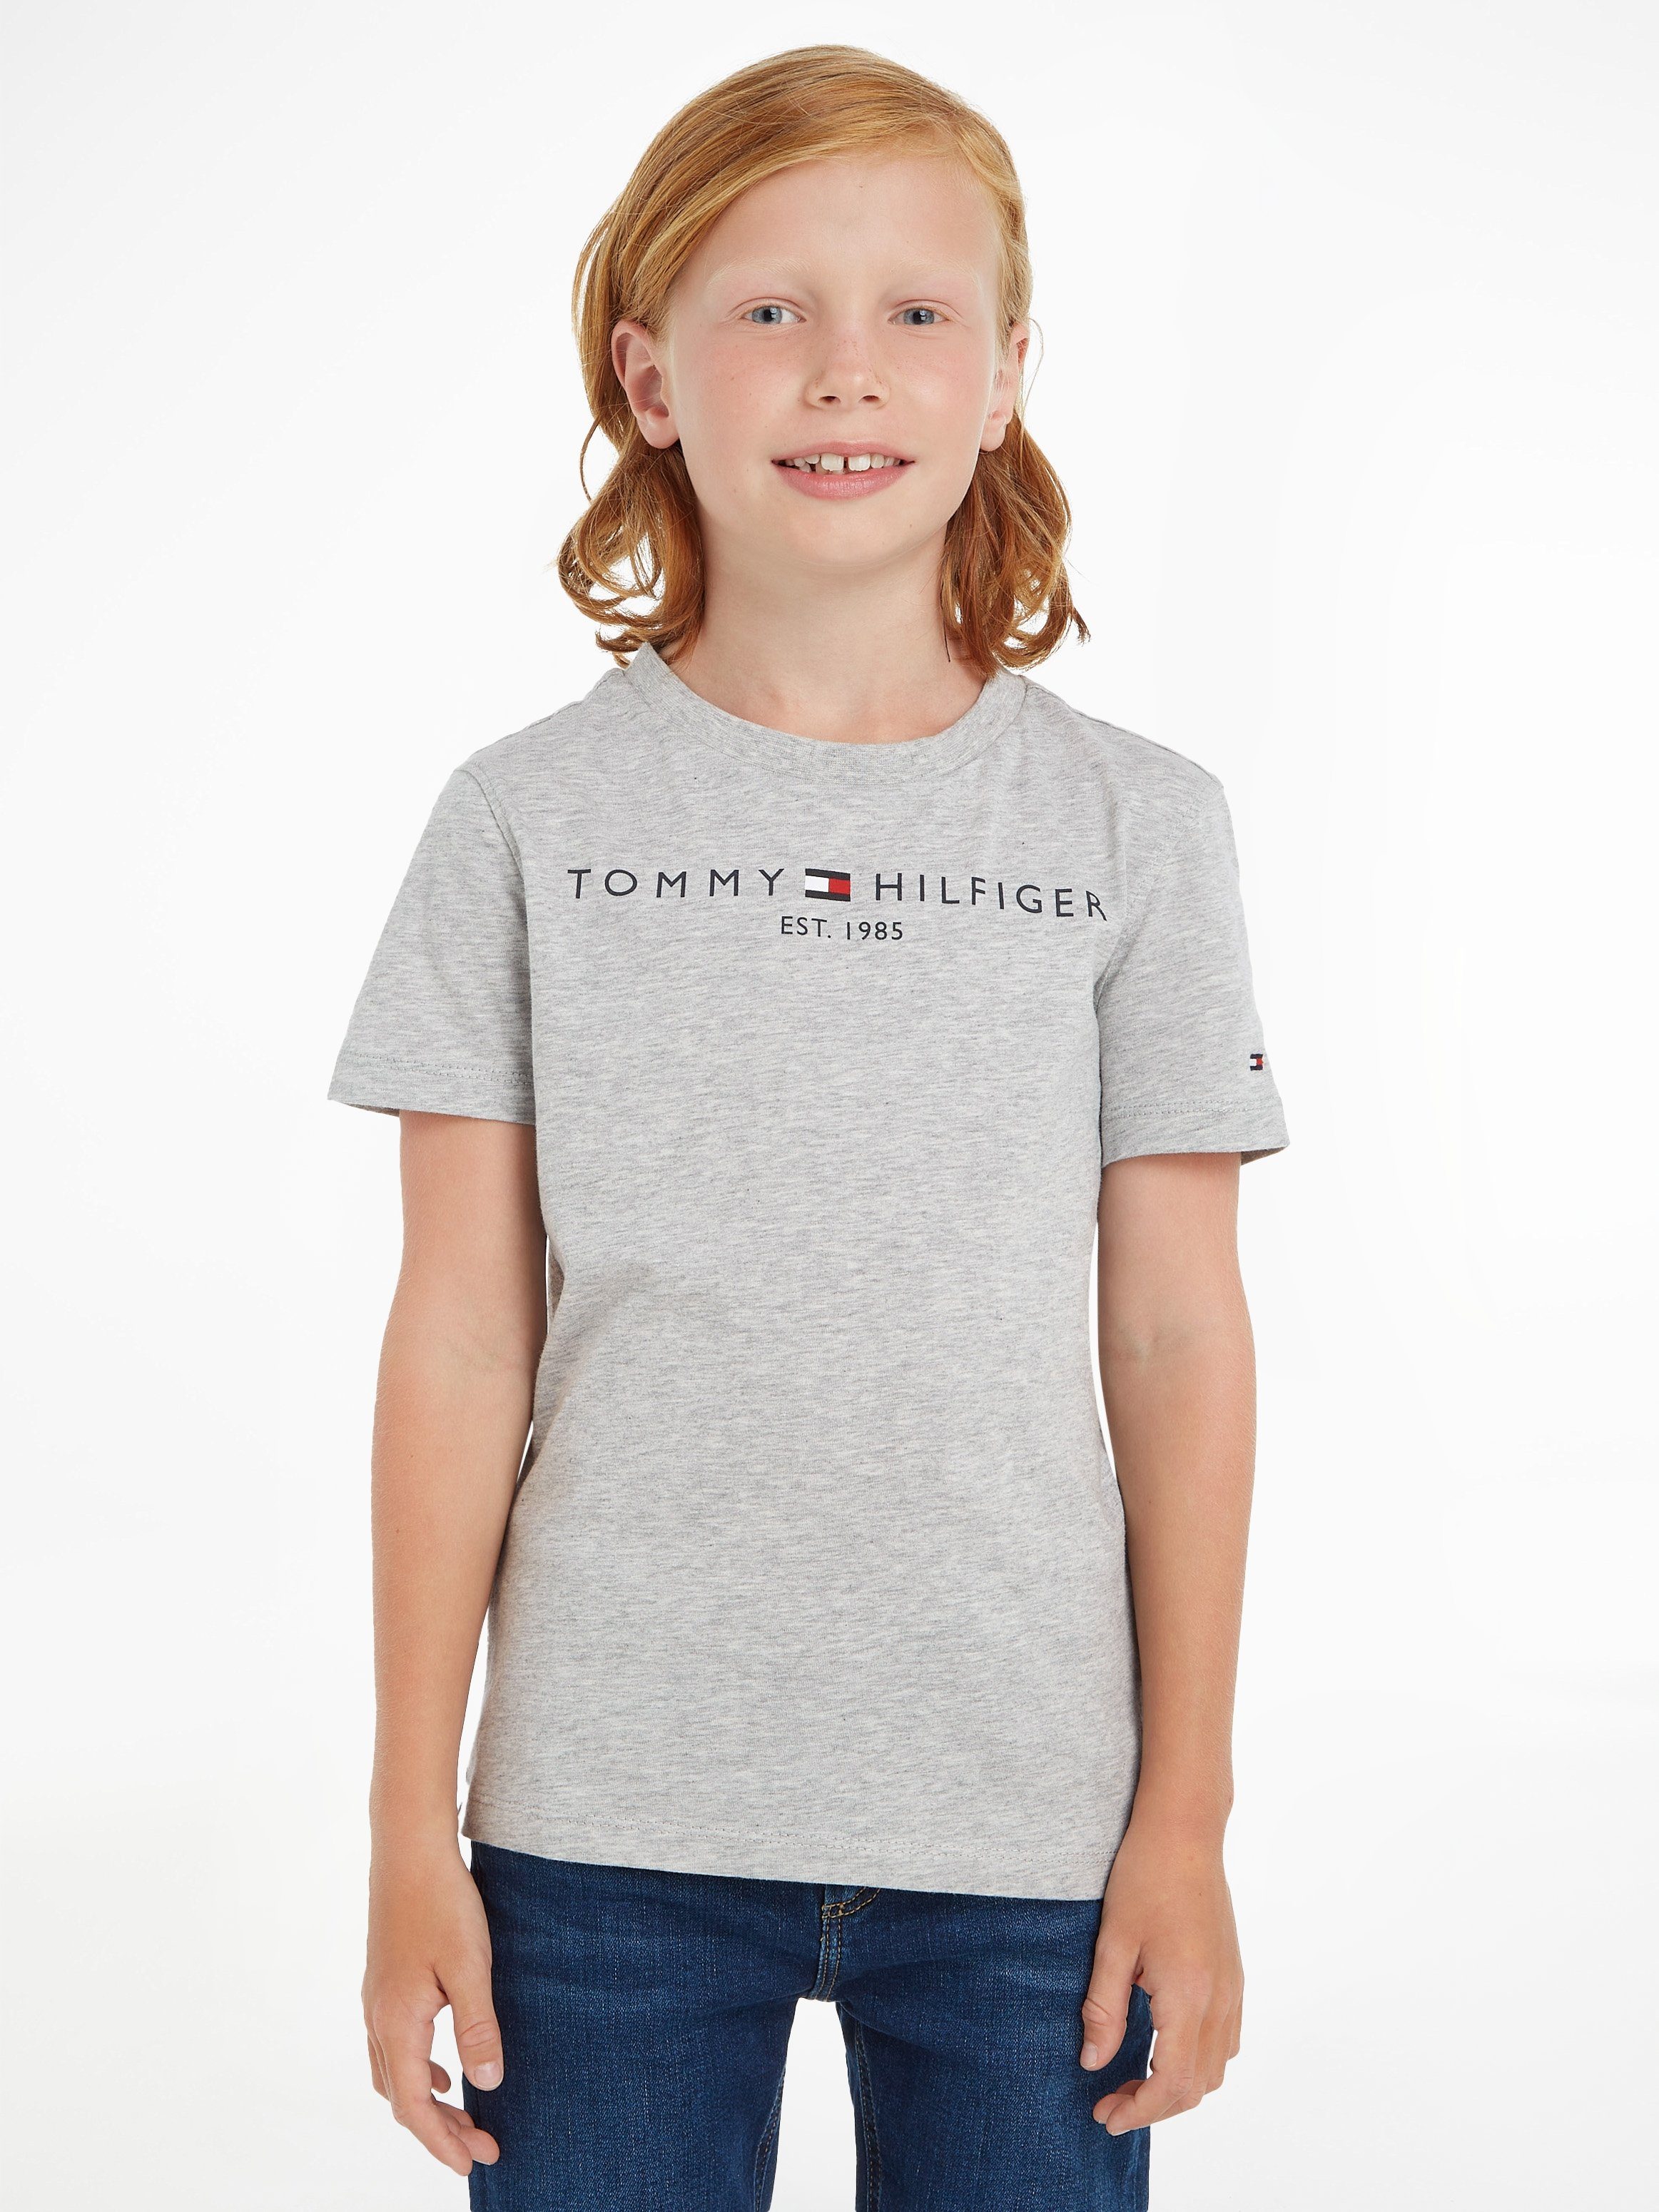 Tommy Hilfiger T-Shirt ESSENTIAL TEE Kinder Kids Junior MiniMe,für Jungen und Mädchen | T-Shirts